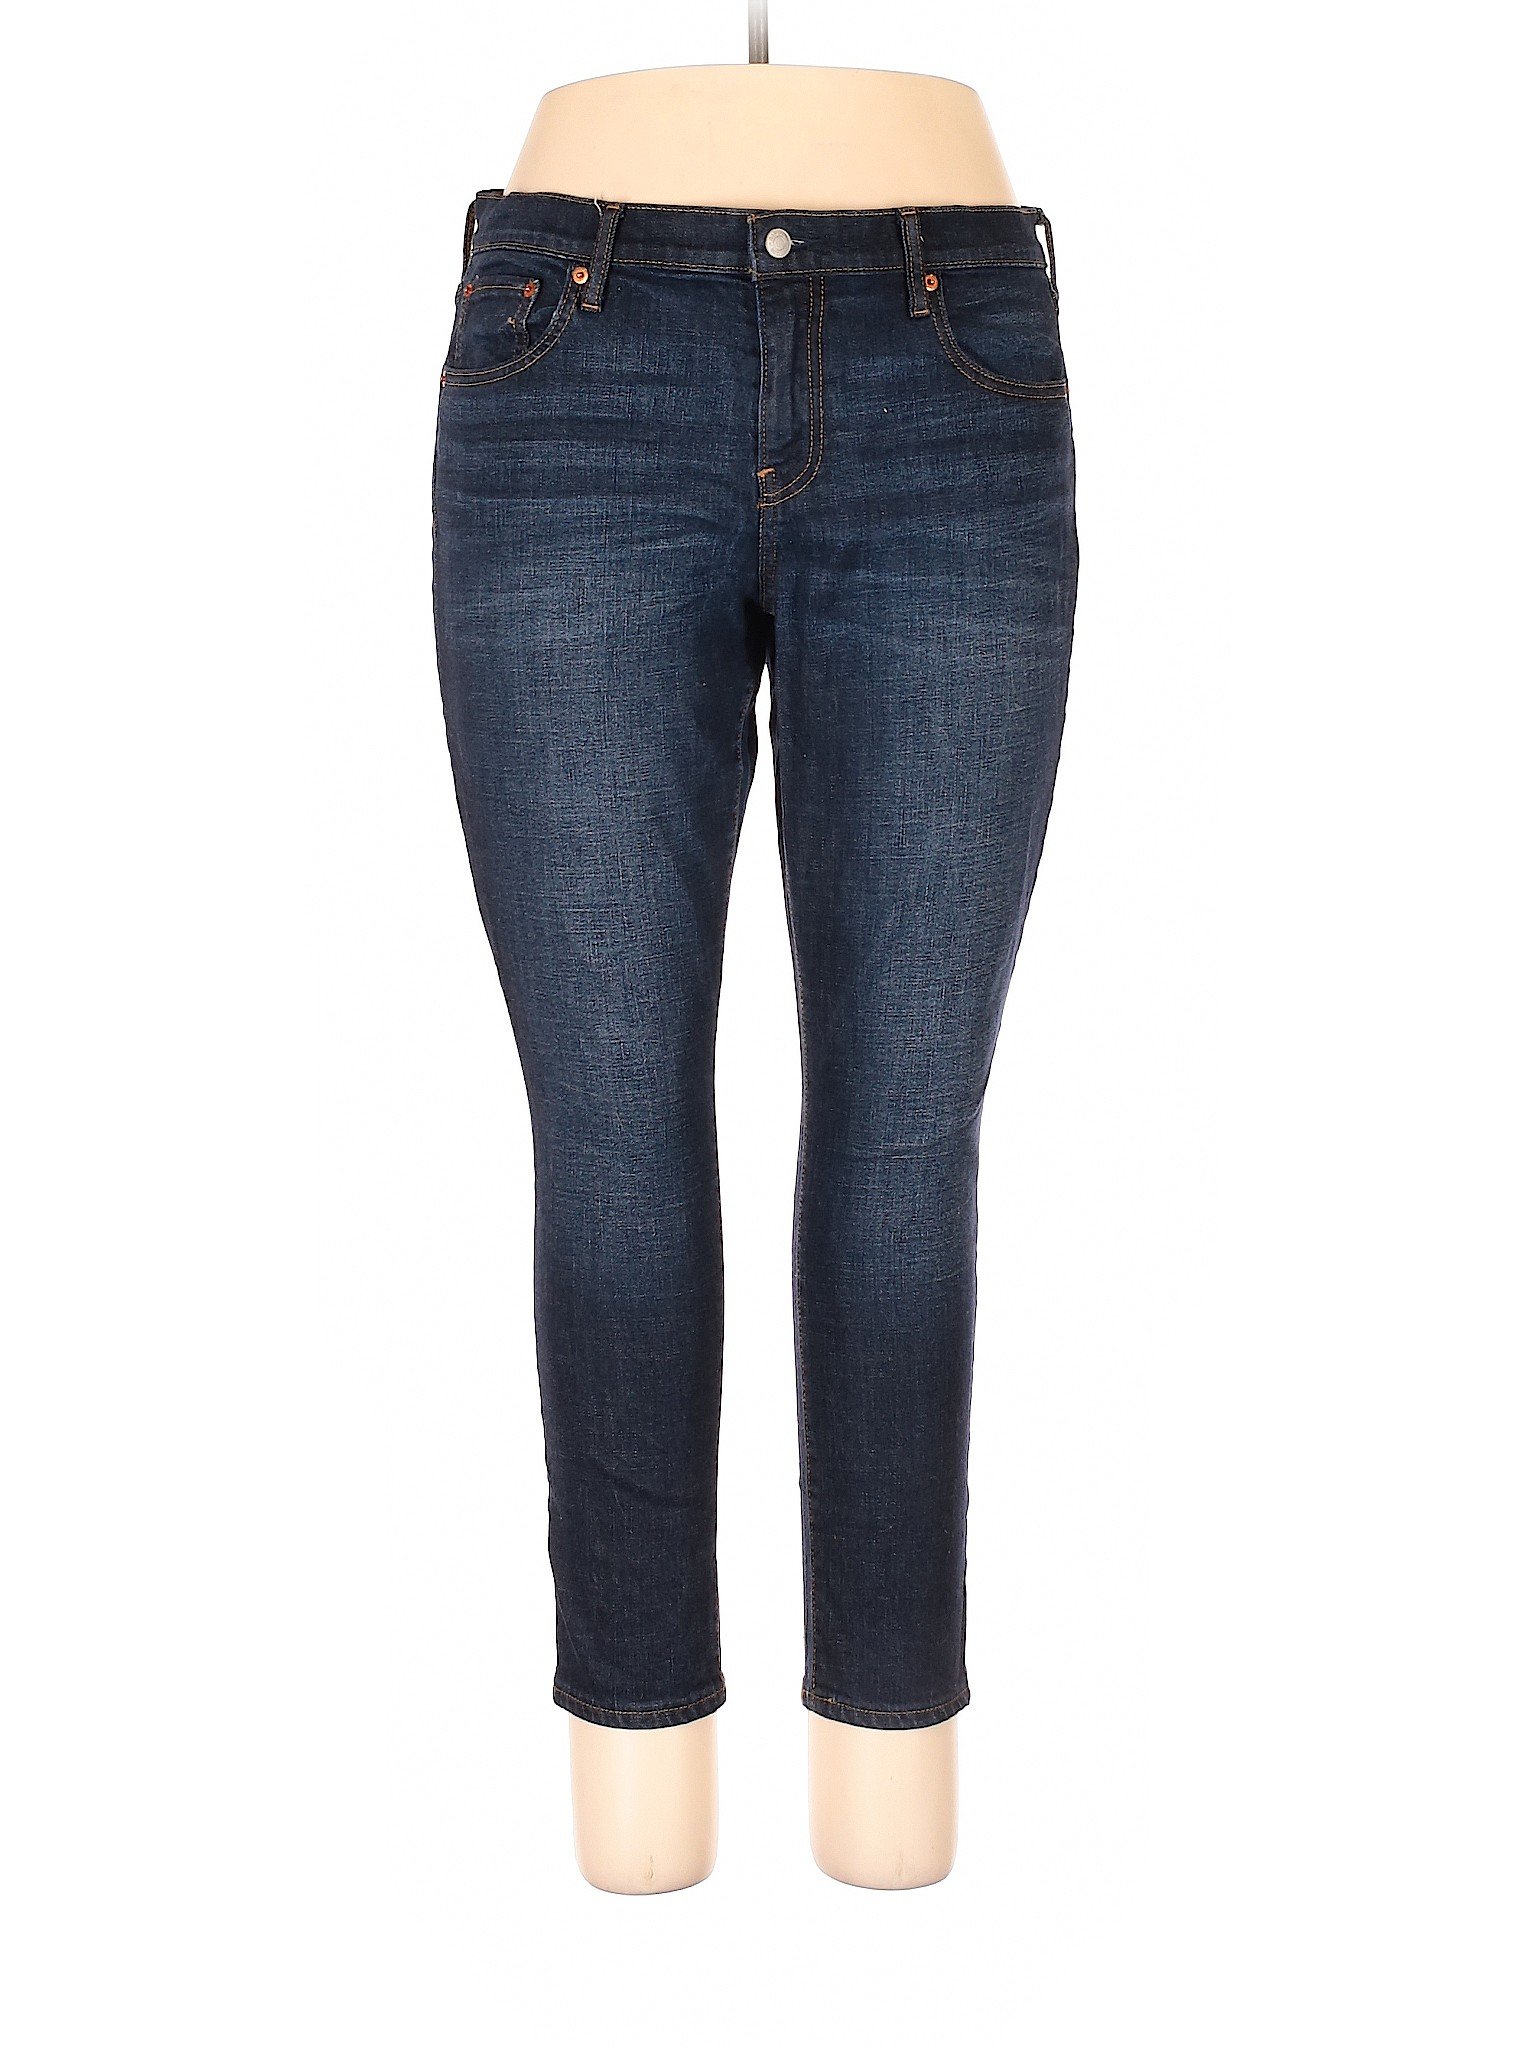 Gap Women Blue Jeans 31W | eBay